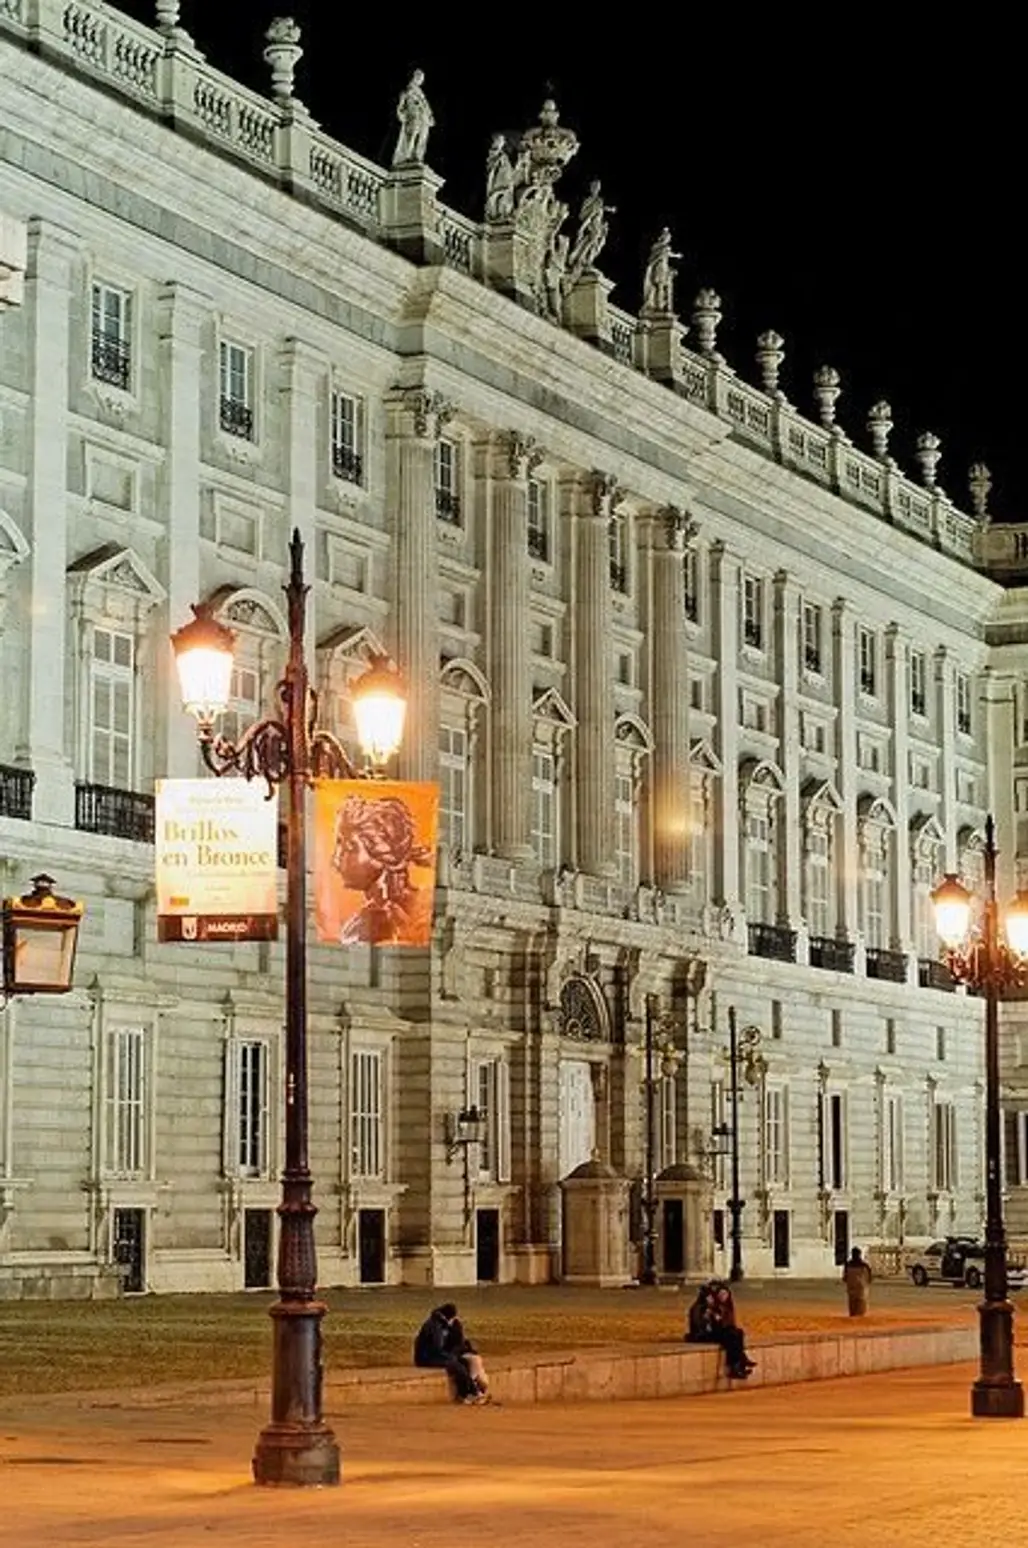 The Palacio Real De Madrid